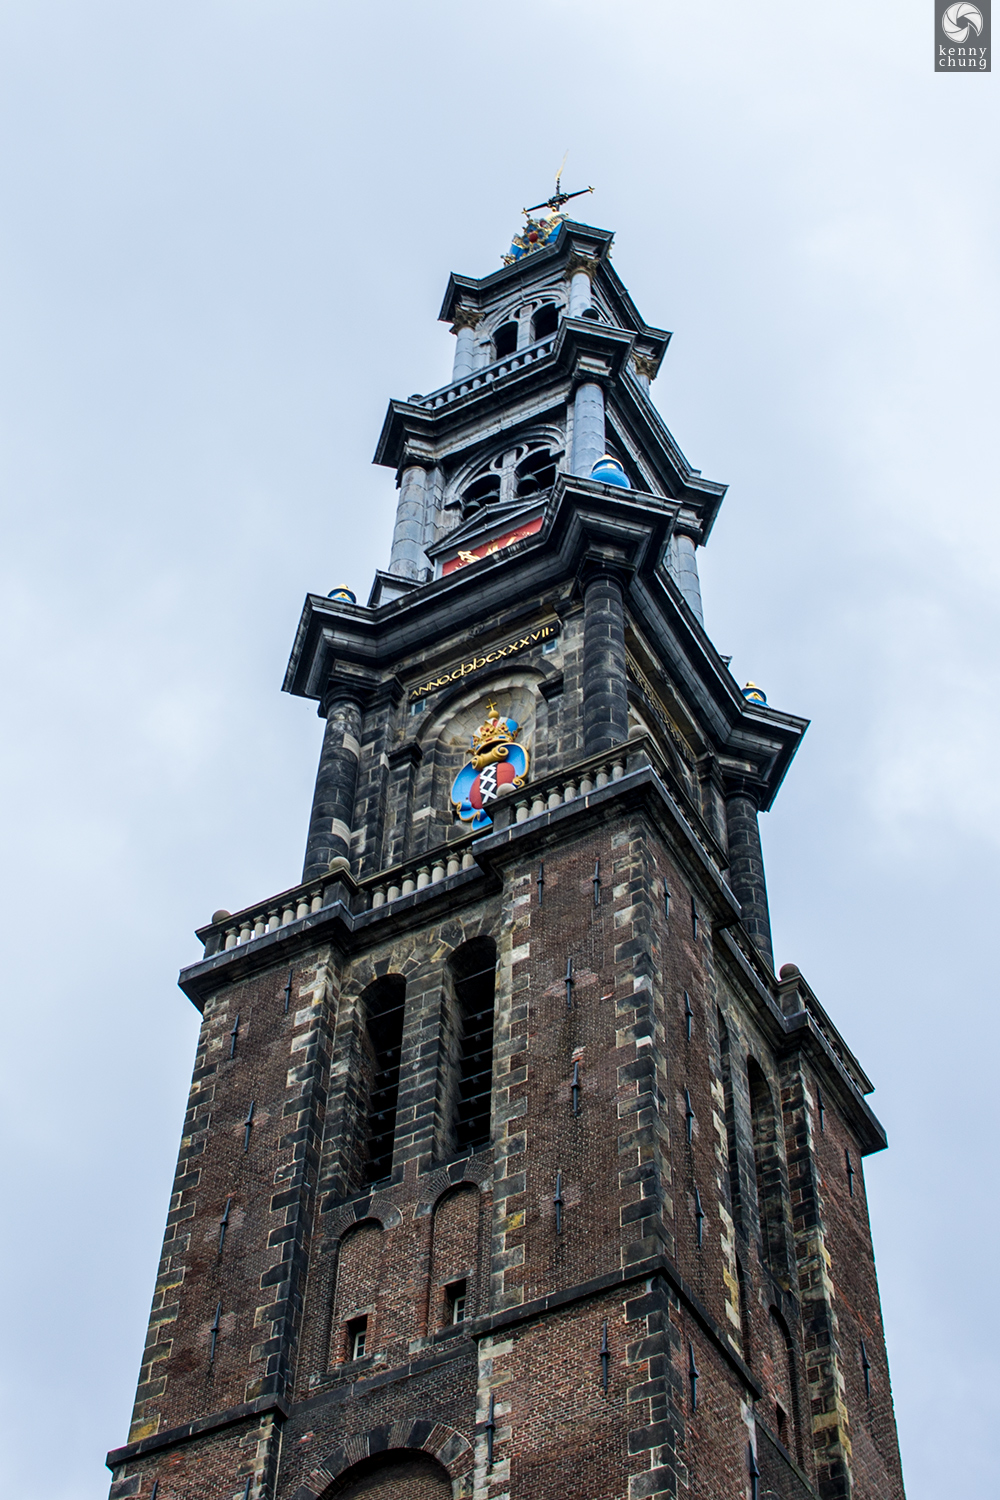 The Westerkerk Tower in Amsterdam